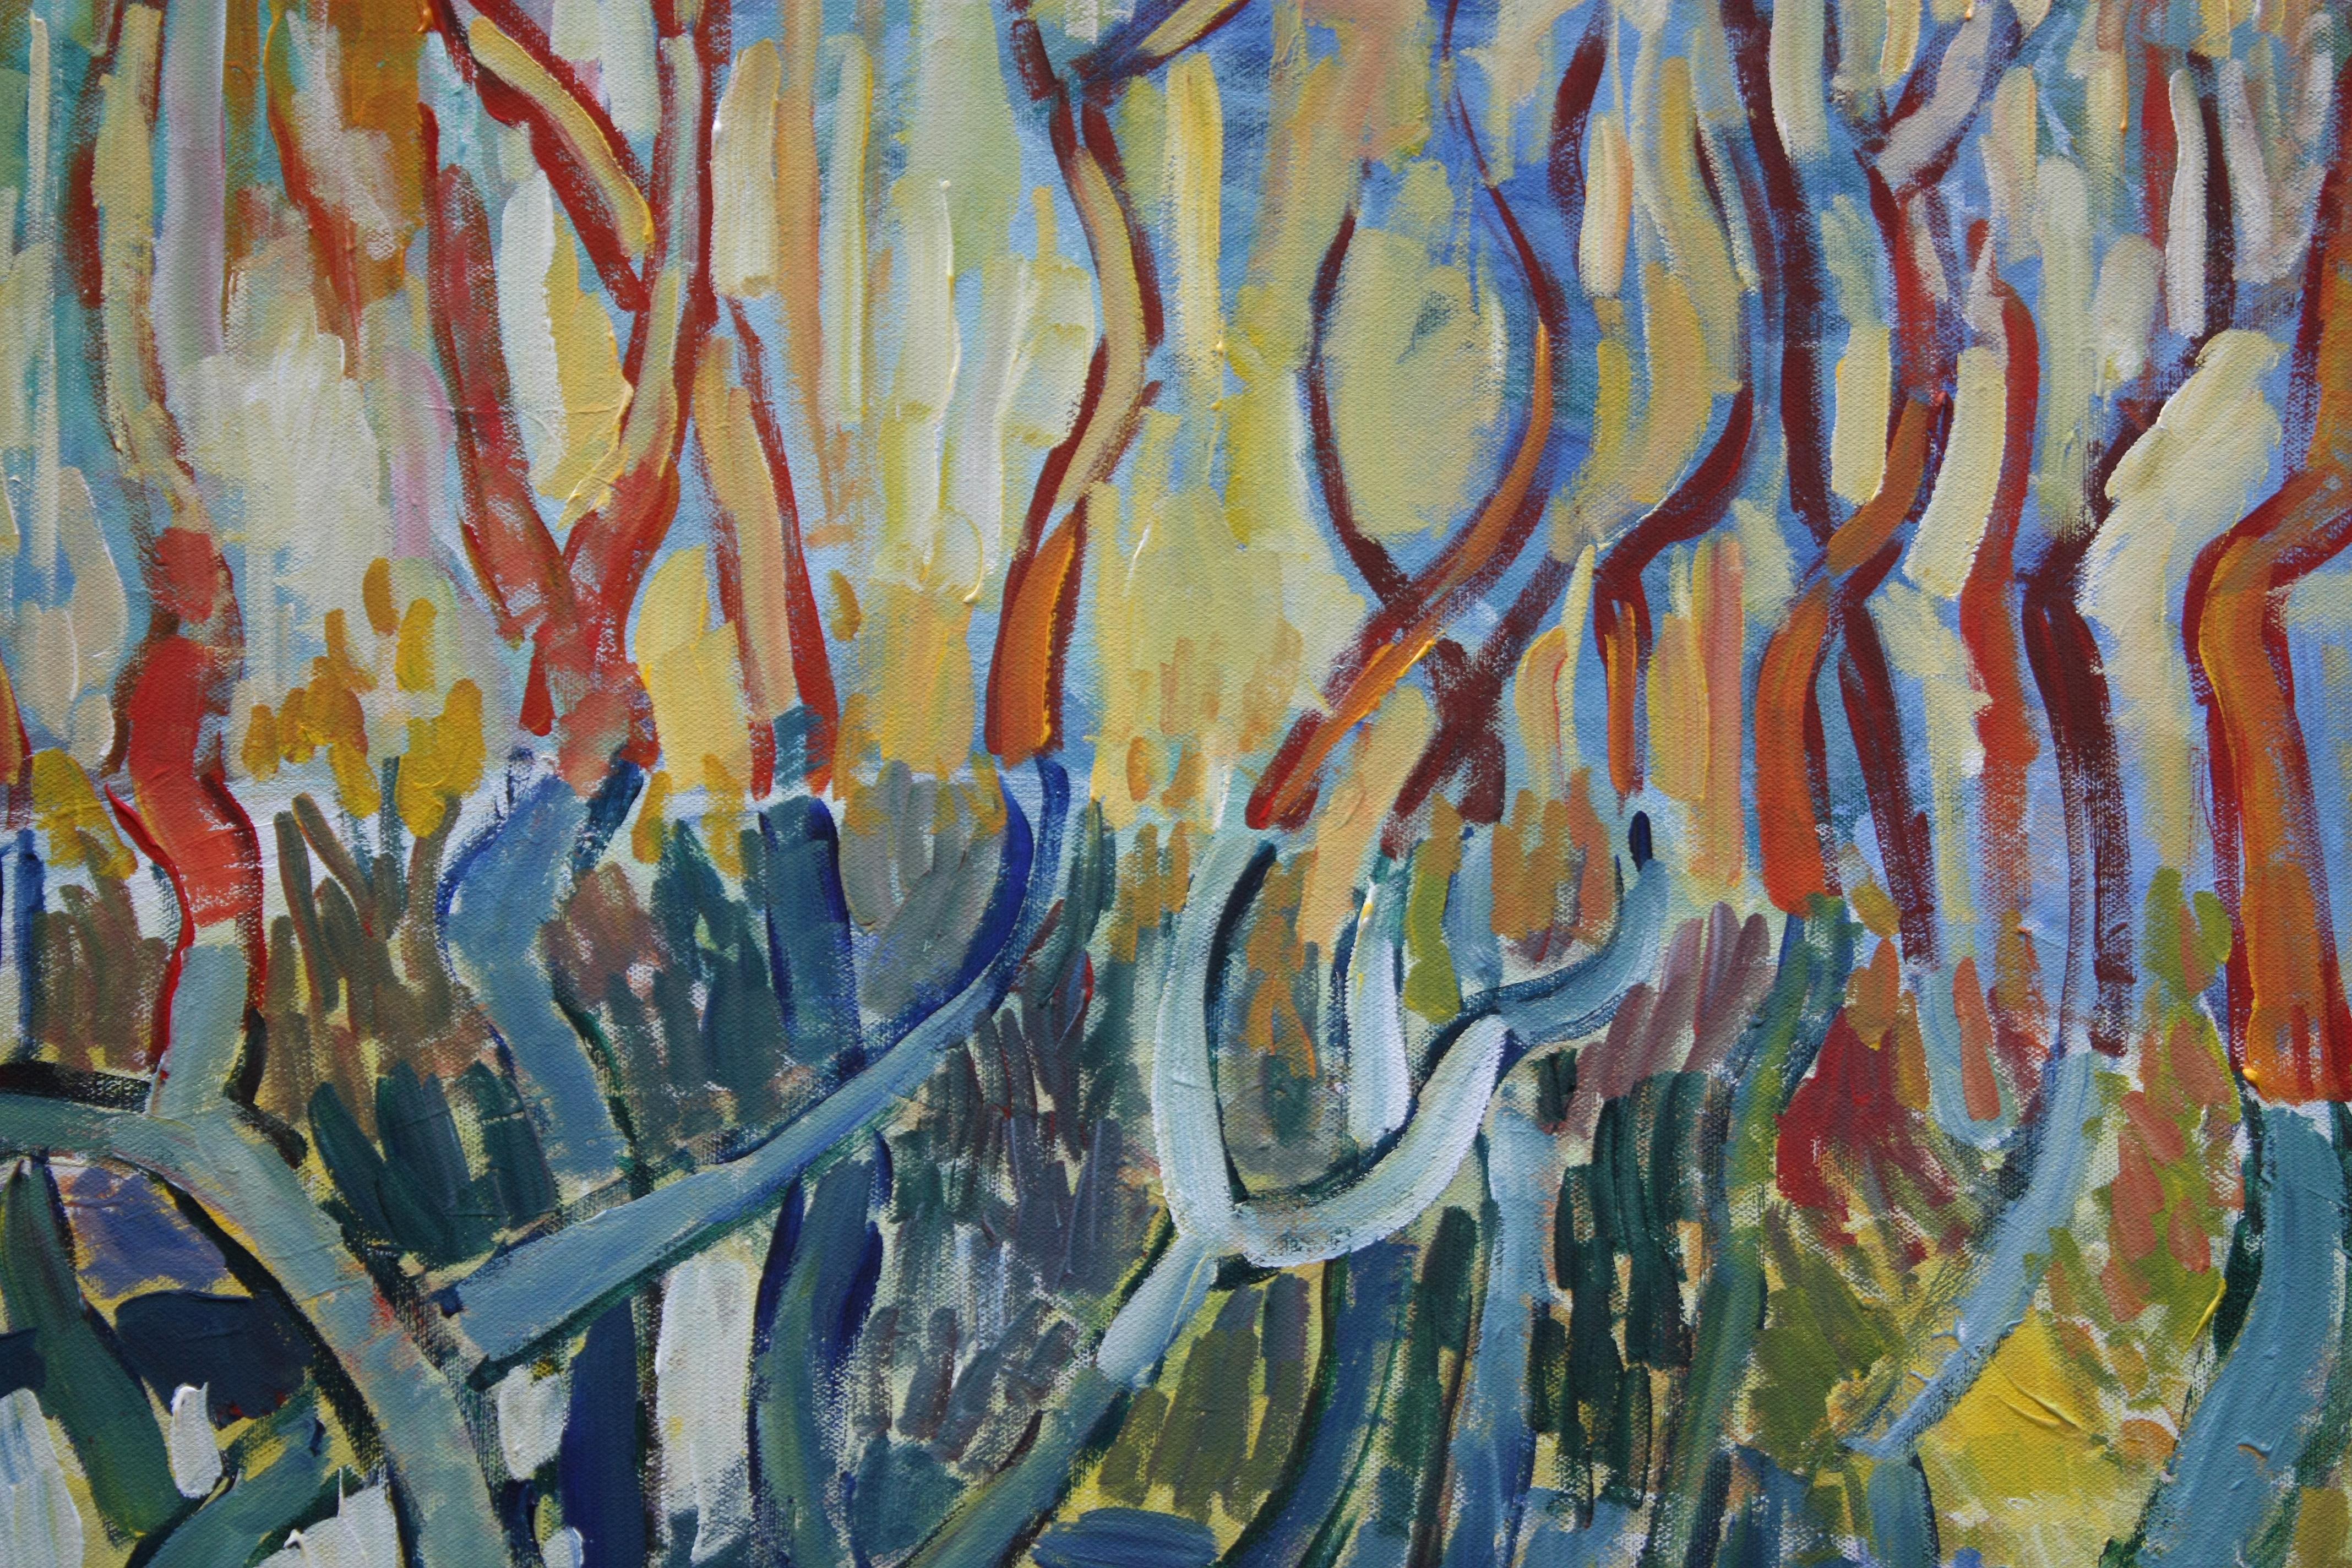 <p>Kommentare des Künstlers<br>Im letzten Licht eines Februartages in Massachusetts erstrahlen die Baumkronen in leuchtenden Farben. In Anlehnung an van Goghs kühne Landschaften kontrastiert die Untermalung mit den lebendigen Farben der Bäume. Die